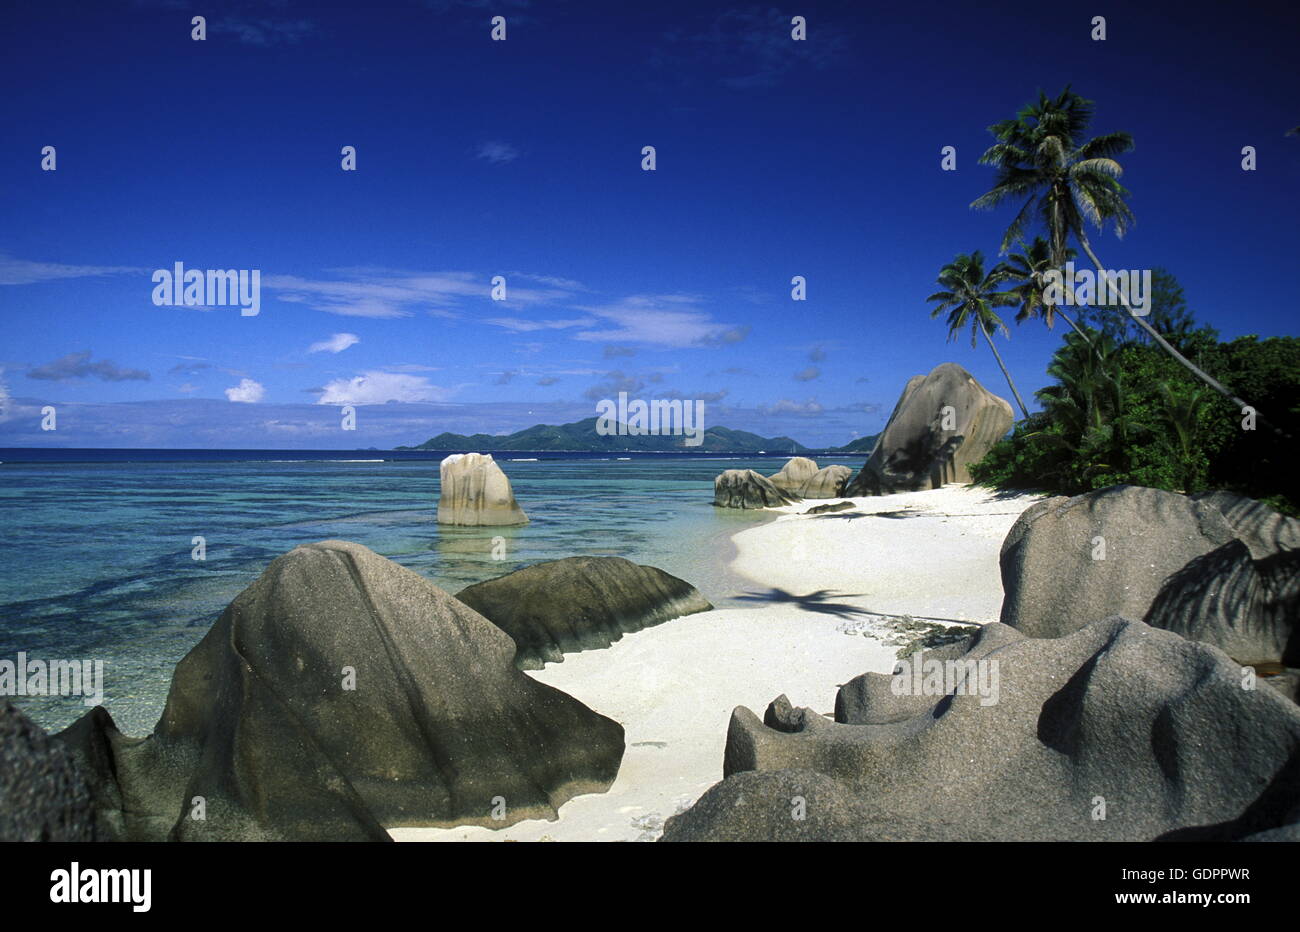 Afrika, Indischer Ozean, Seychellen, Insel, Strand, Reisen, Ferien, Meer, Beach, La Digue,  Ein Traumstrand an der Westkueste de Stock Photo